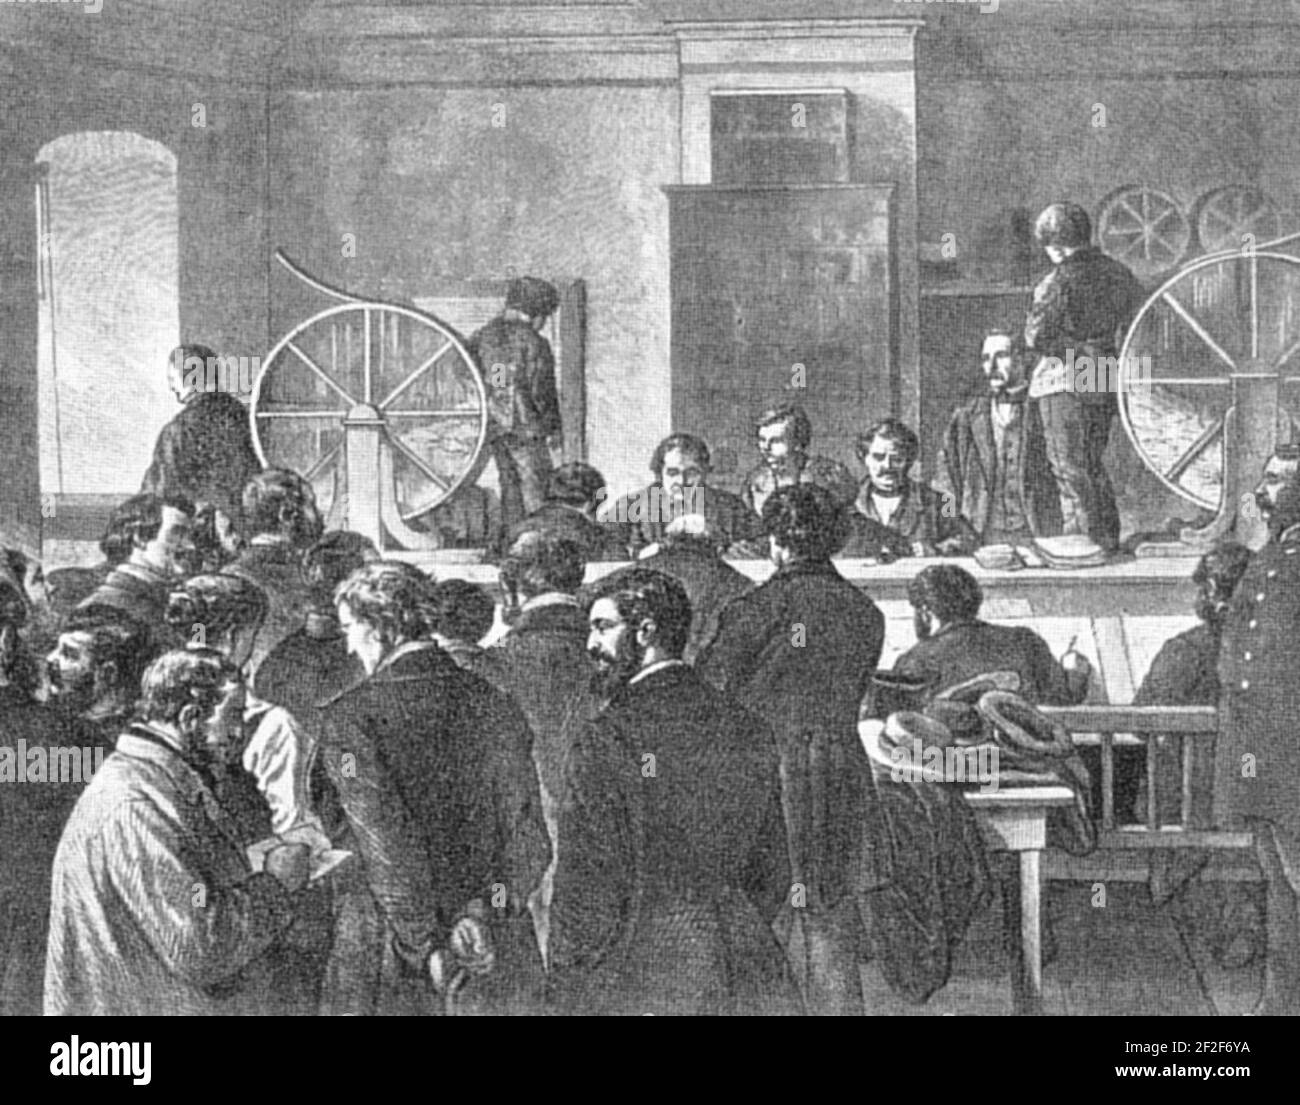 Preussische Klassenlotterie Ziehung 1880. Stock Photo